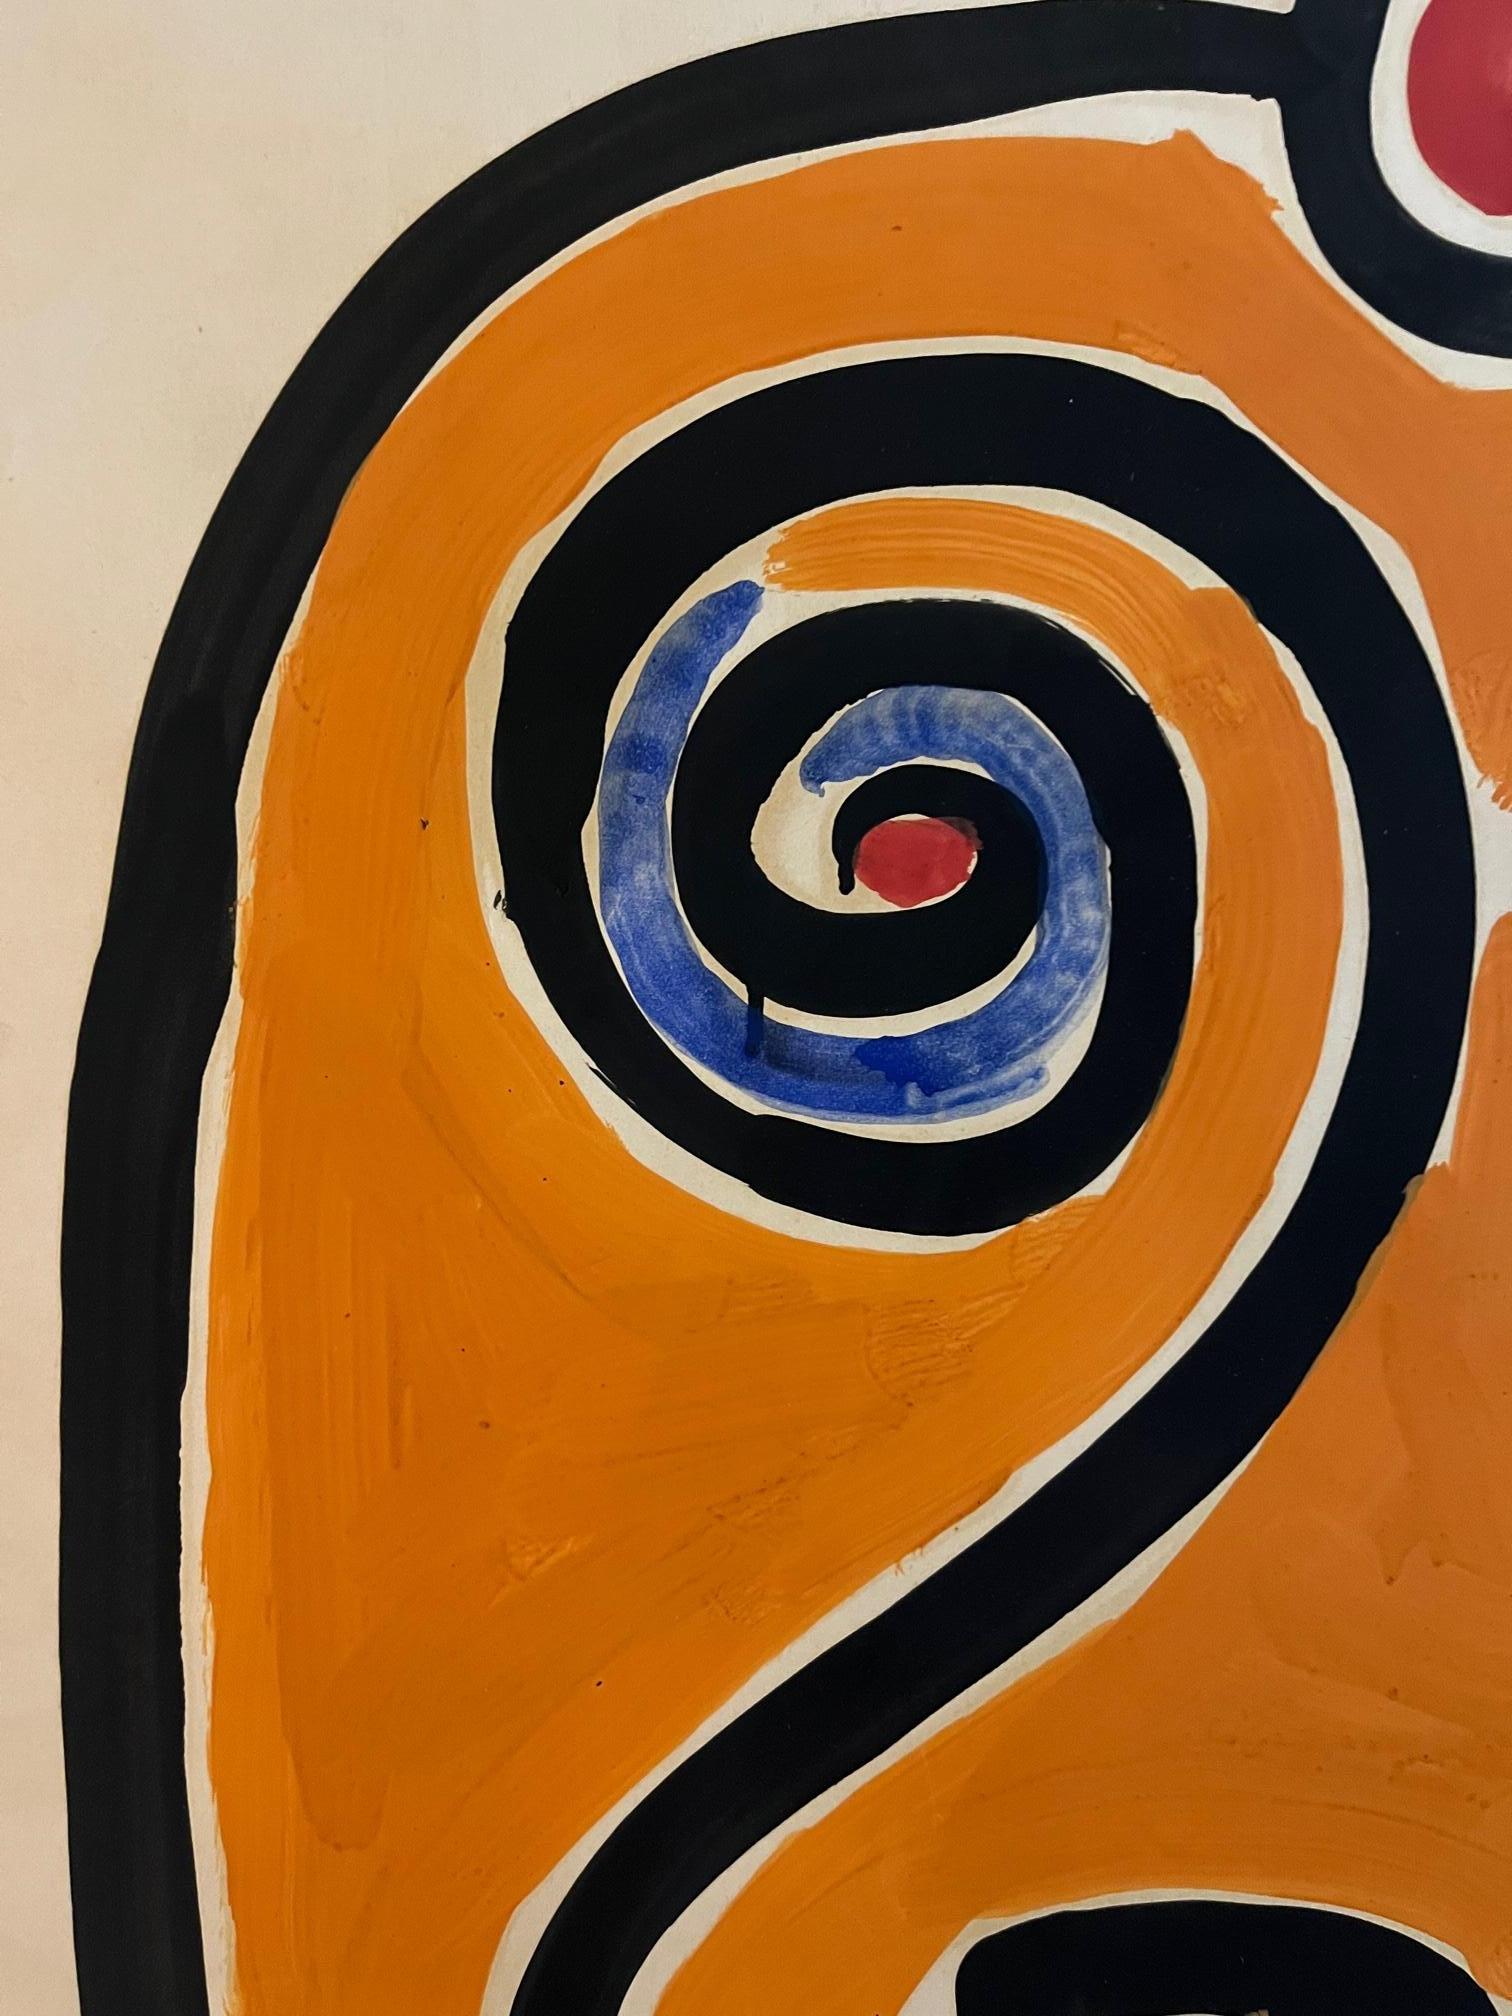 Albert Chubac, Komposition,
Gemischte Medien auf Papier,
Gestempelt,
ca. 1960, Frankreich.

Maße: Höhe 1m73, Breite 70 cm, Tiefe 1 cm.

Albert Chubac wurde 1920 in Genf geboren. Nach seinem Studium der dekorativen Kunst, dann an den Beaux-Arts in